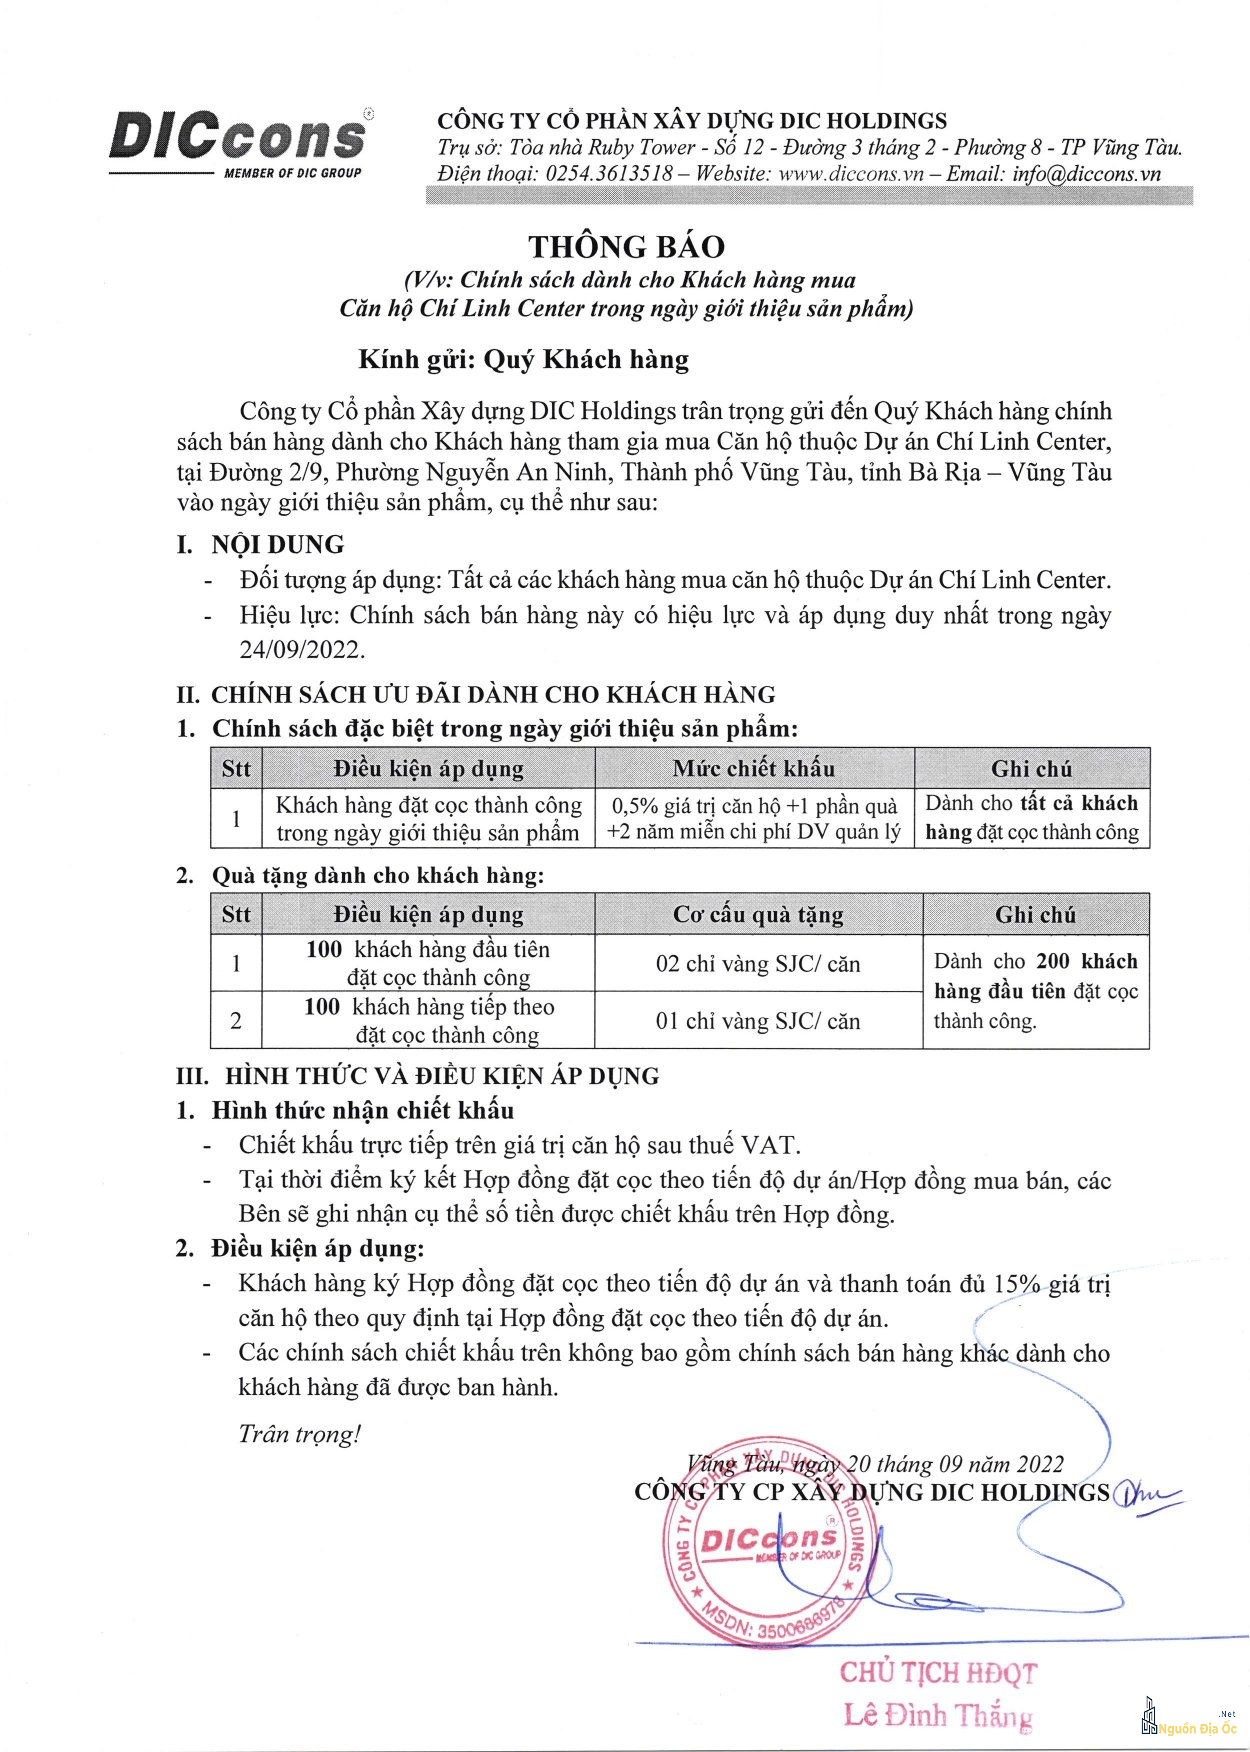 Chính sách ngày mở bán Chí Linh Center